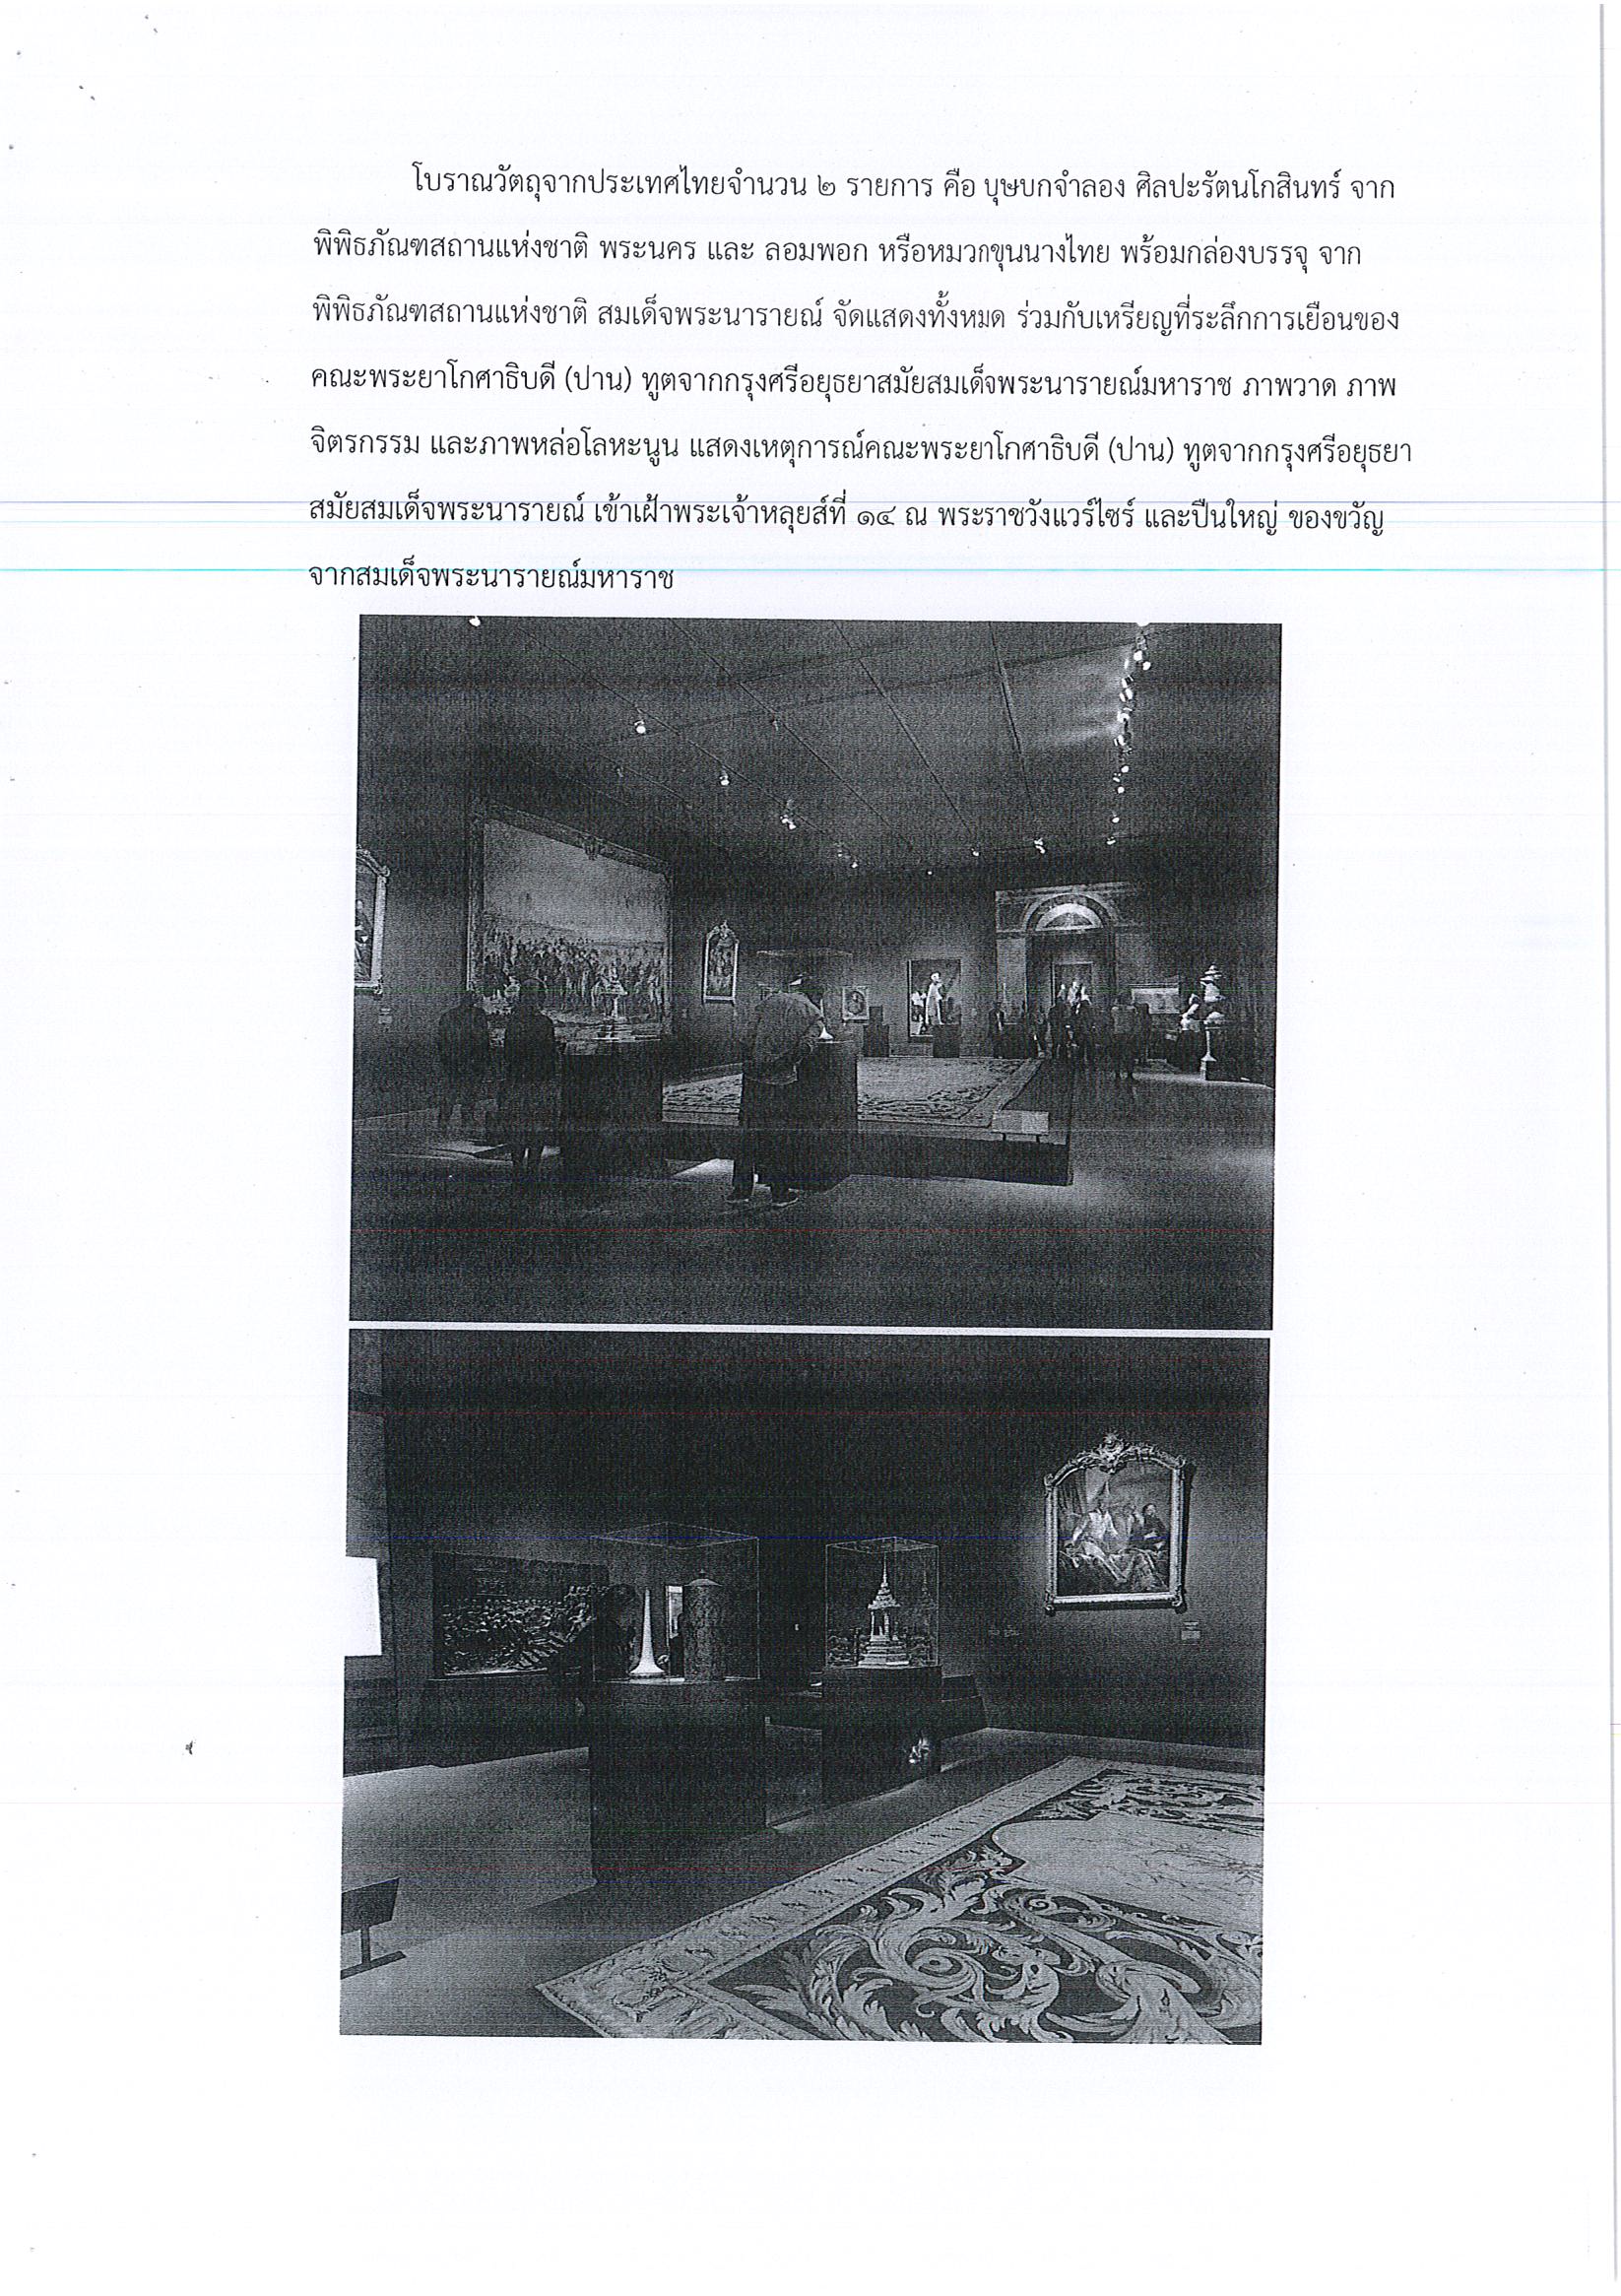 รายงานการเดินทางไปราชการ ณ สหรัฐอเมริกา ระหว่างวันที่ 27 กรกฎาคม – 2 สิงหาคม 2561 โครงการตรวจสภาพหีบห่อโบราณวัตถุ ตามข้อตกลงดารยืมโบราณวัตถุไปจัดแสดง ณ พิพิธภัณฑ์ศิลปะเมโทรโพลิ